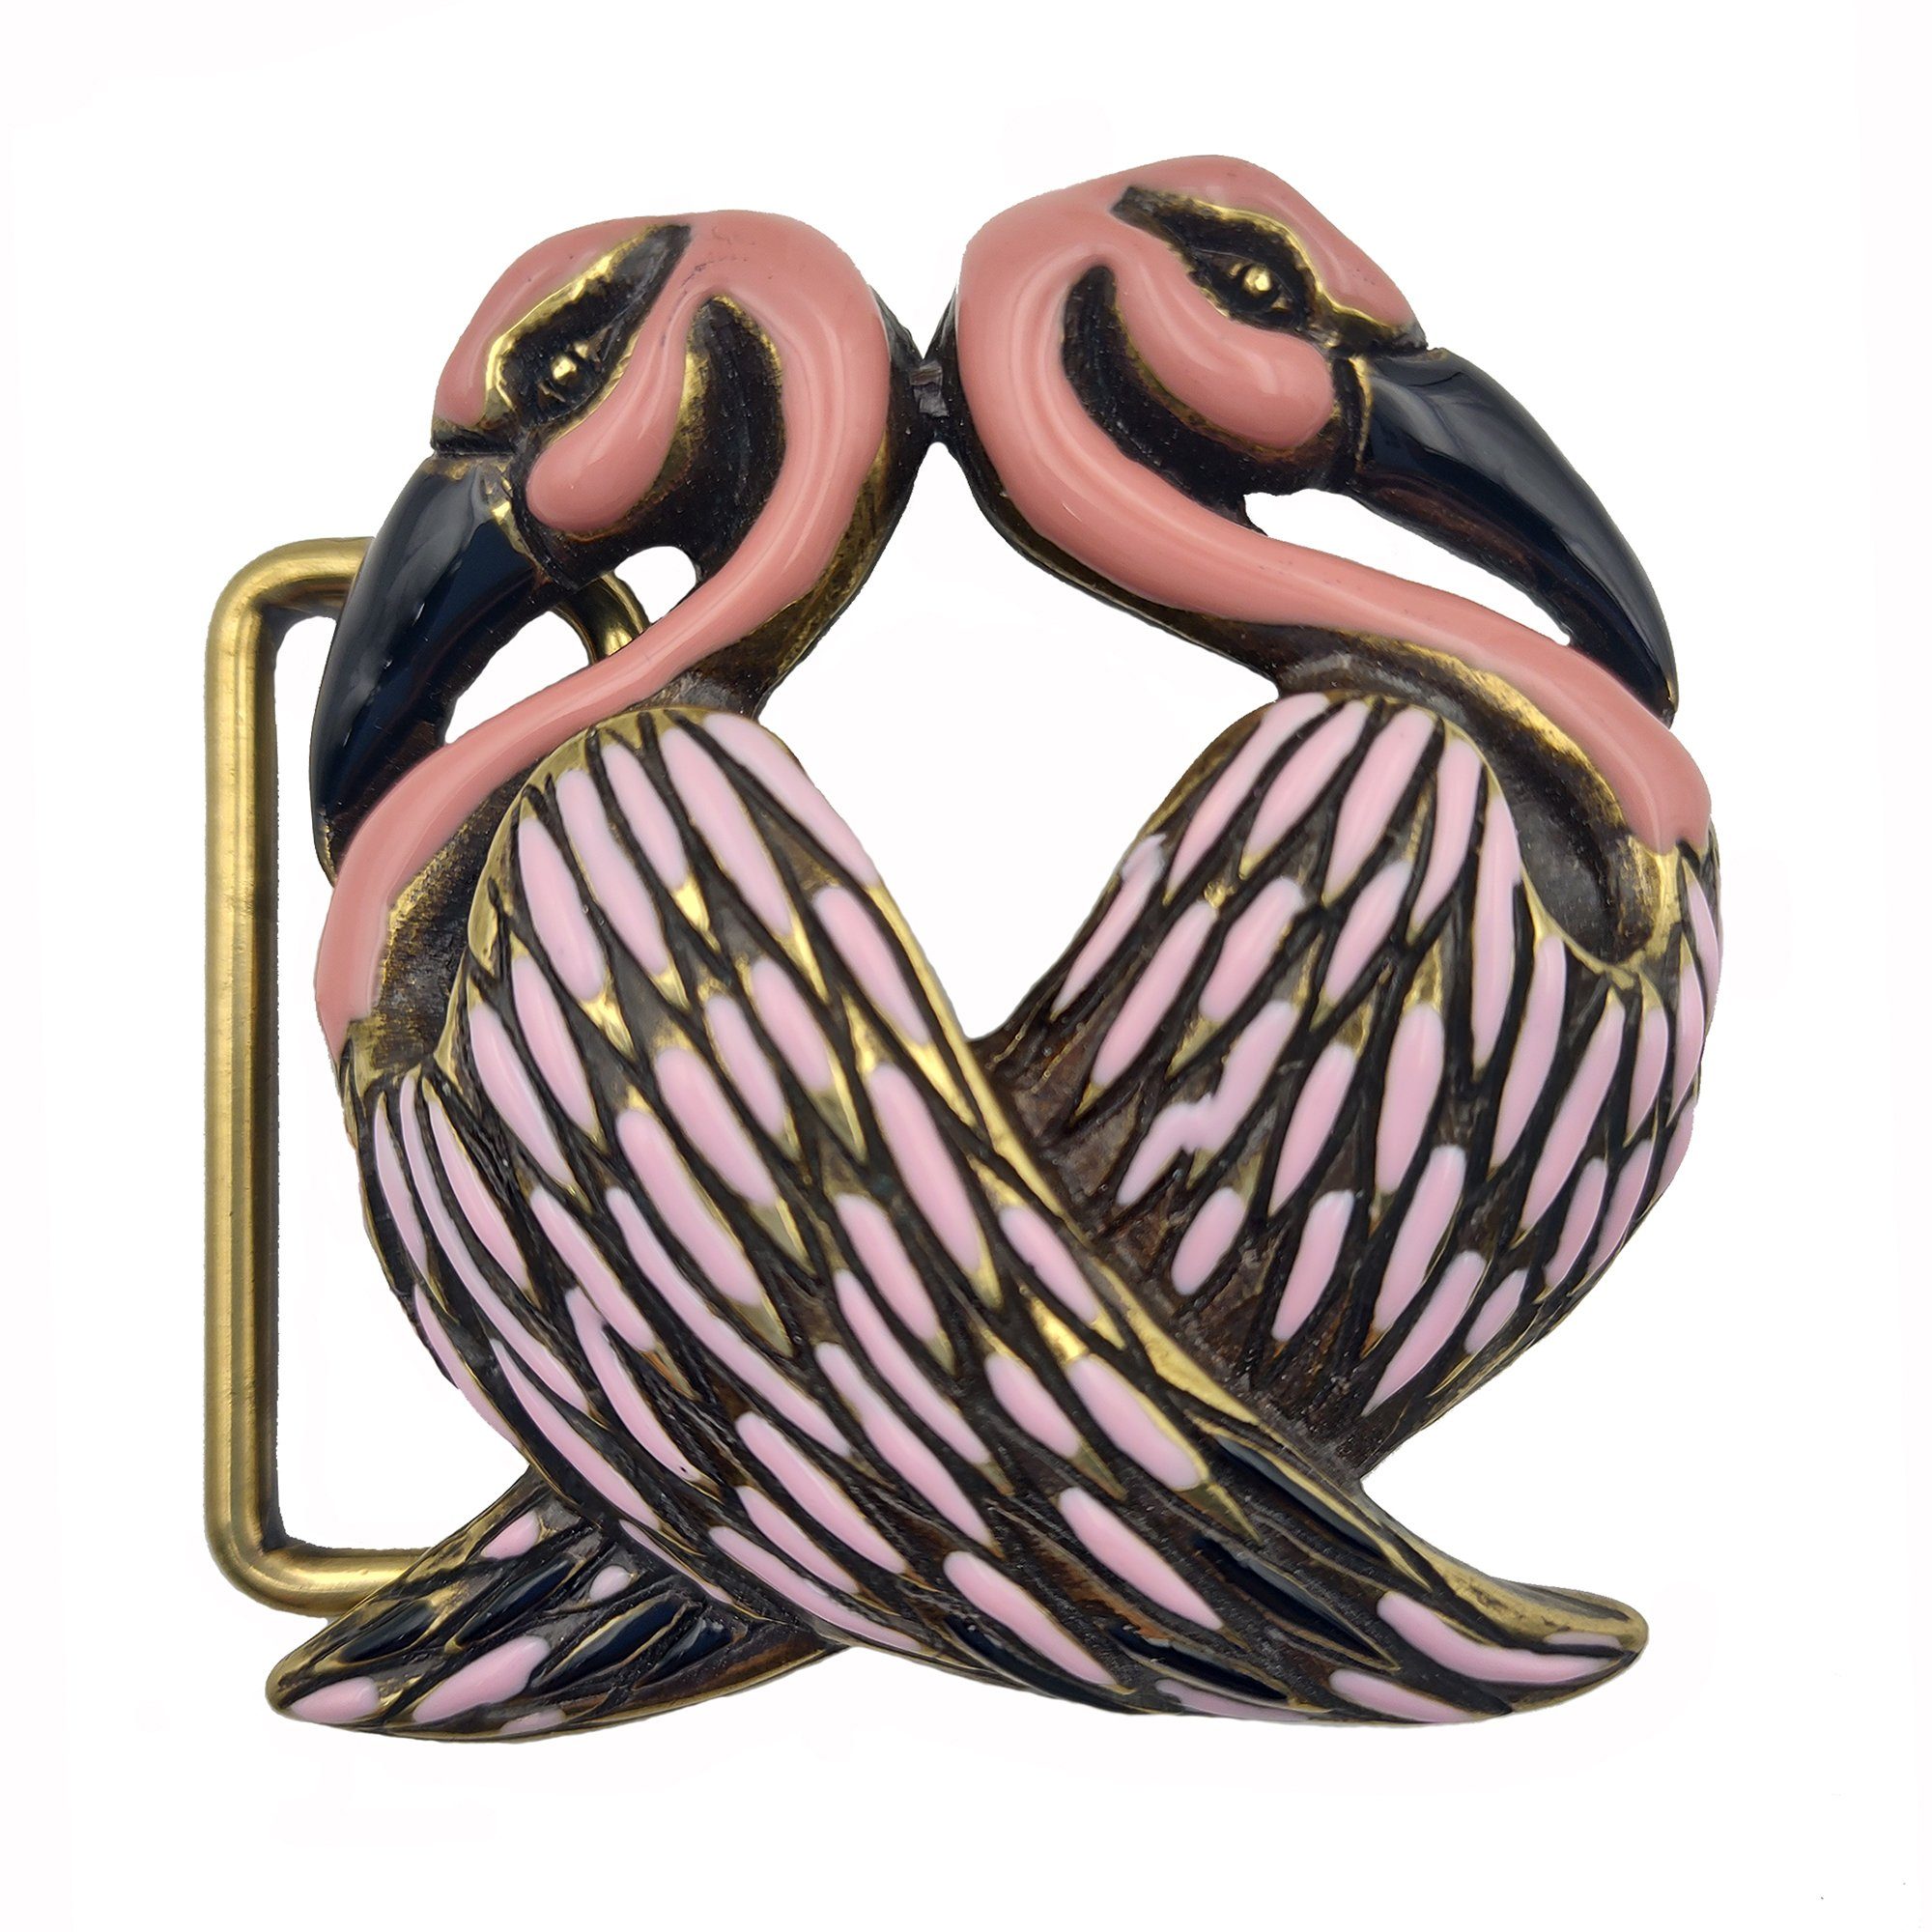 Cassandra Wechselschnalle Gürtelschließe Buckle mit Guß im altmessing Gürtelschnalle außergewöhnlichen Design Accessoires "Flamingo"